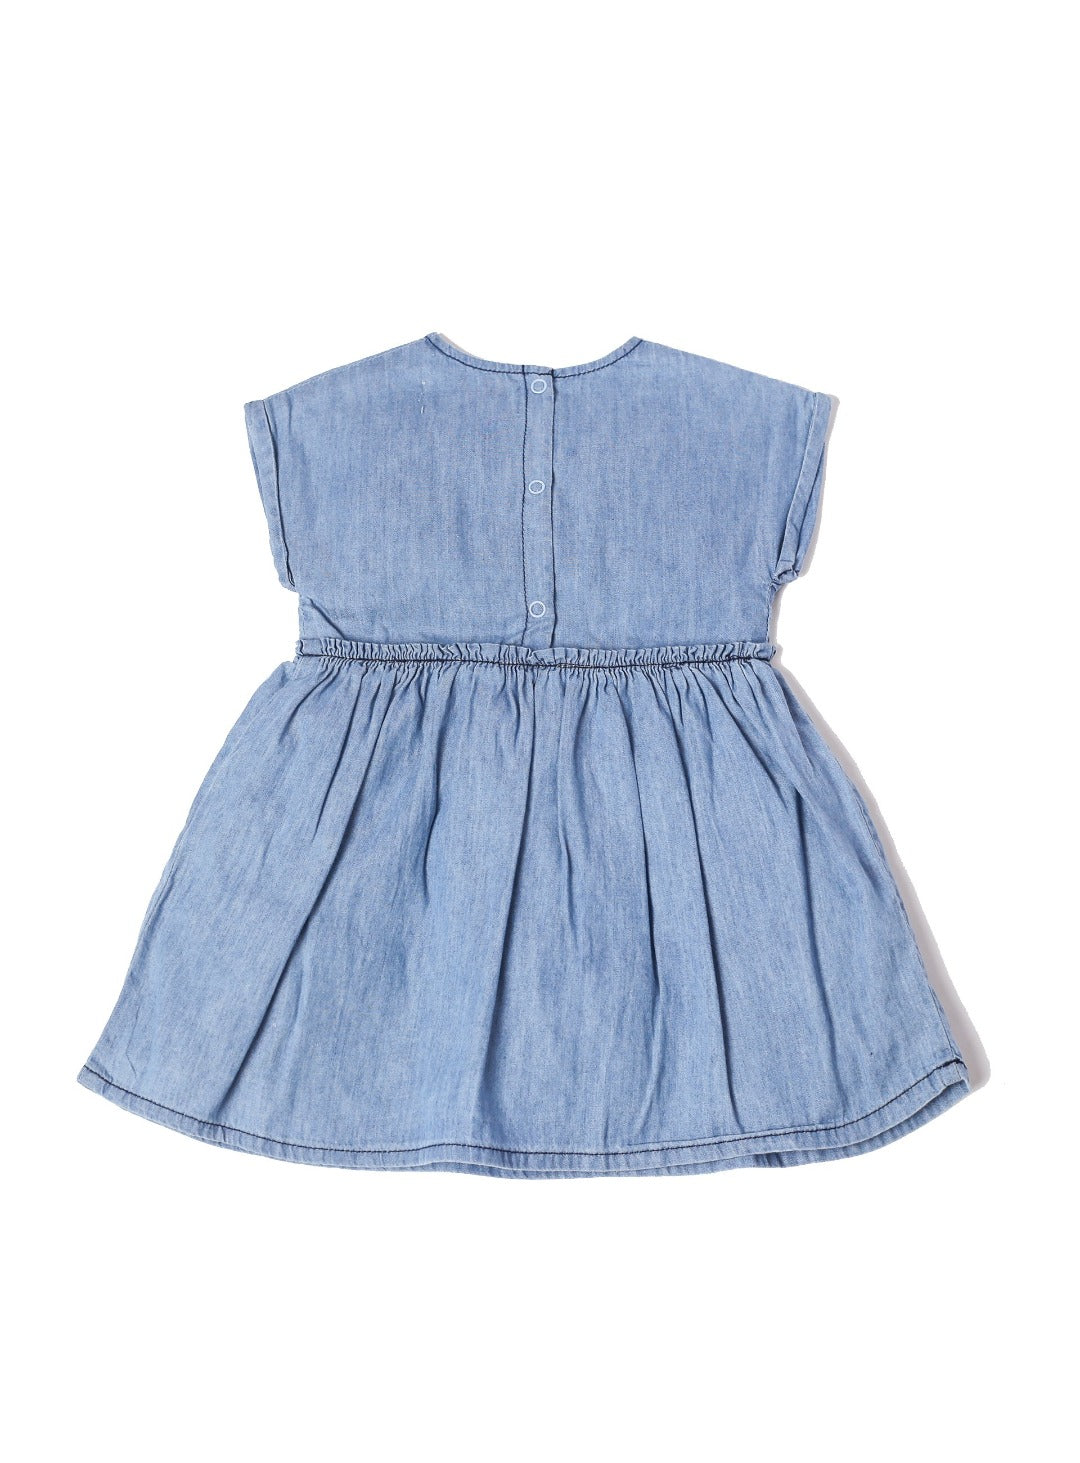 blue denim vintage babydoll dress